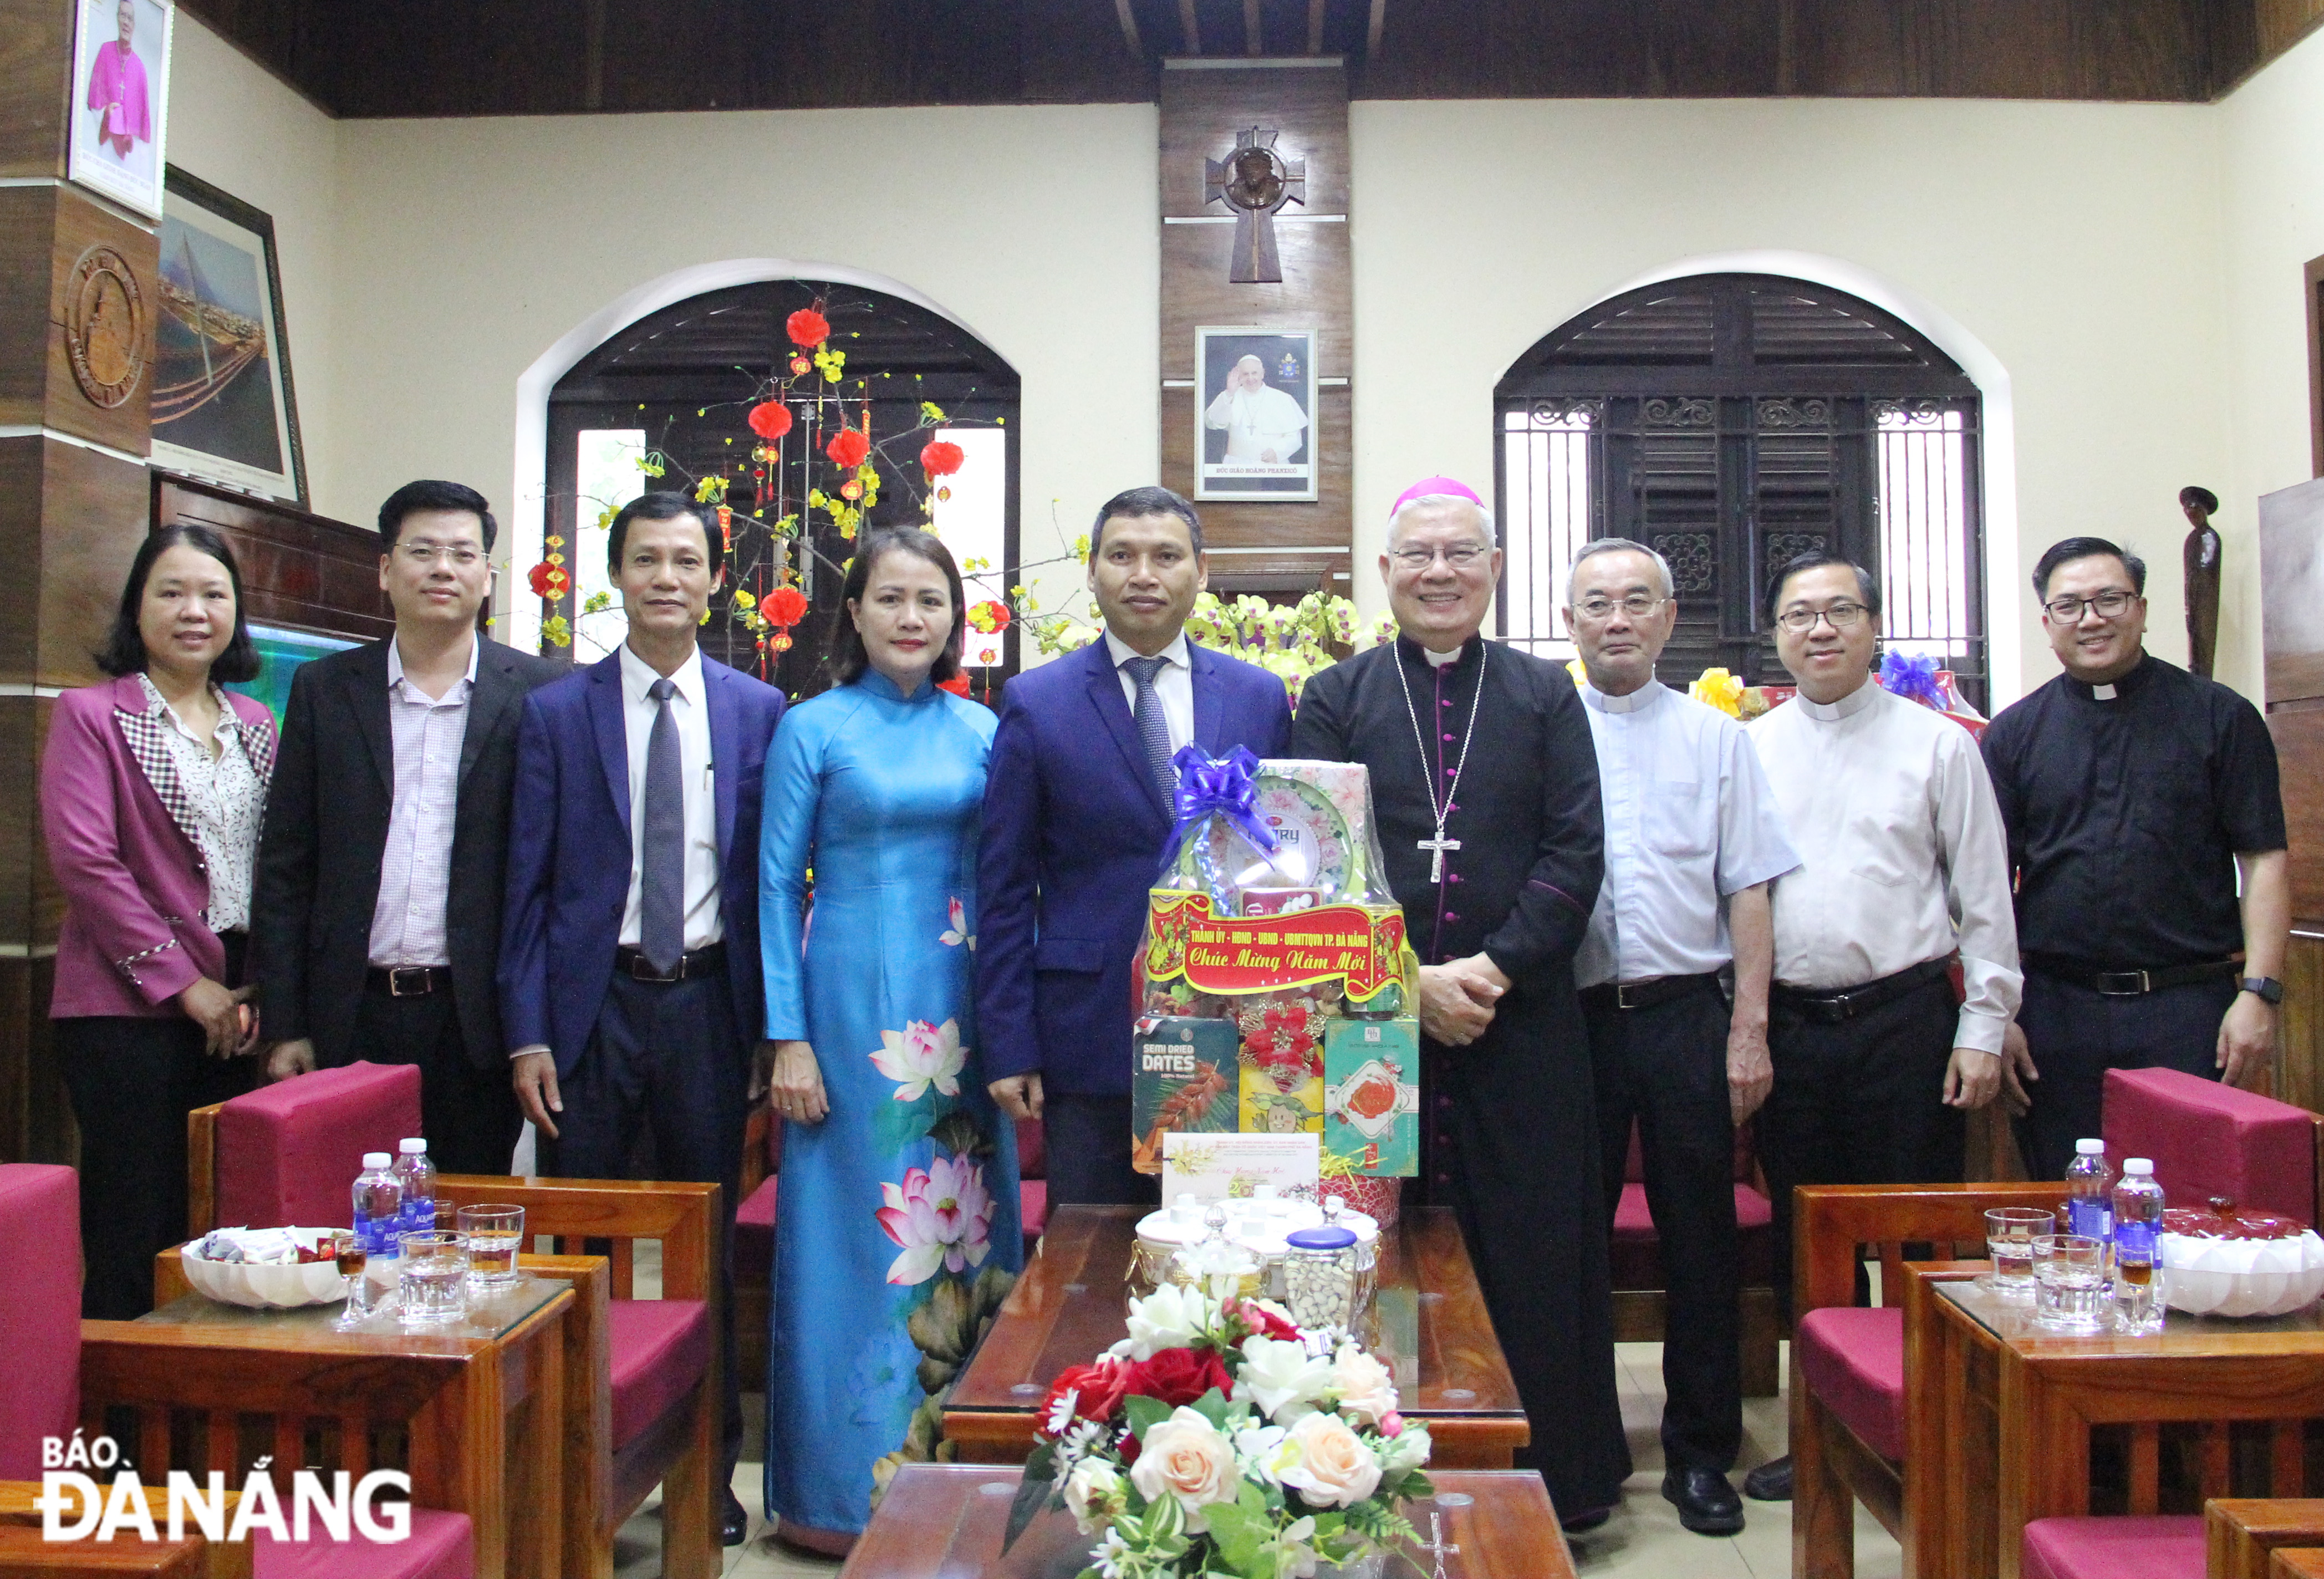 Phó Chủ tịch Thường trực UBND thành phố Hồ Kỳ Minh thăm, tặng quà Giám mục Đặng Đức Ngân và các vị chức sắc Tòa Giám mục Đà Nẵng. Ảnh: X.H